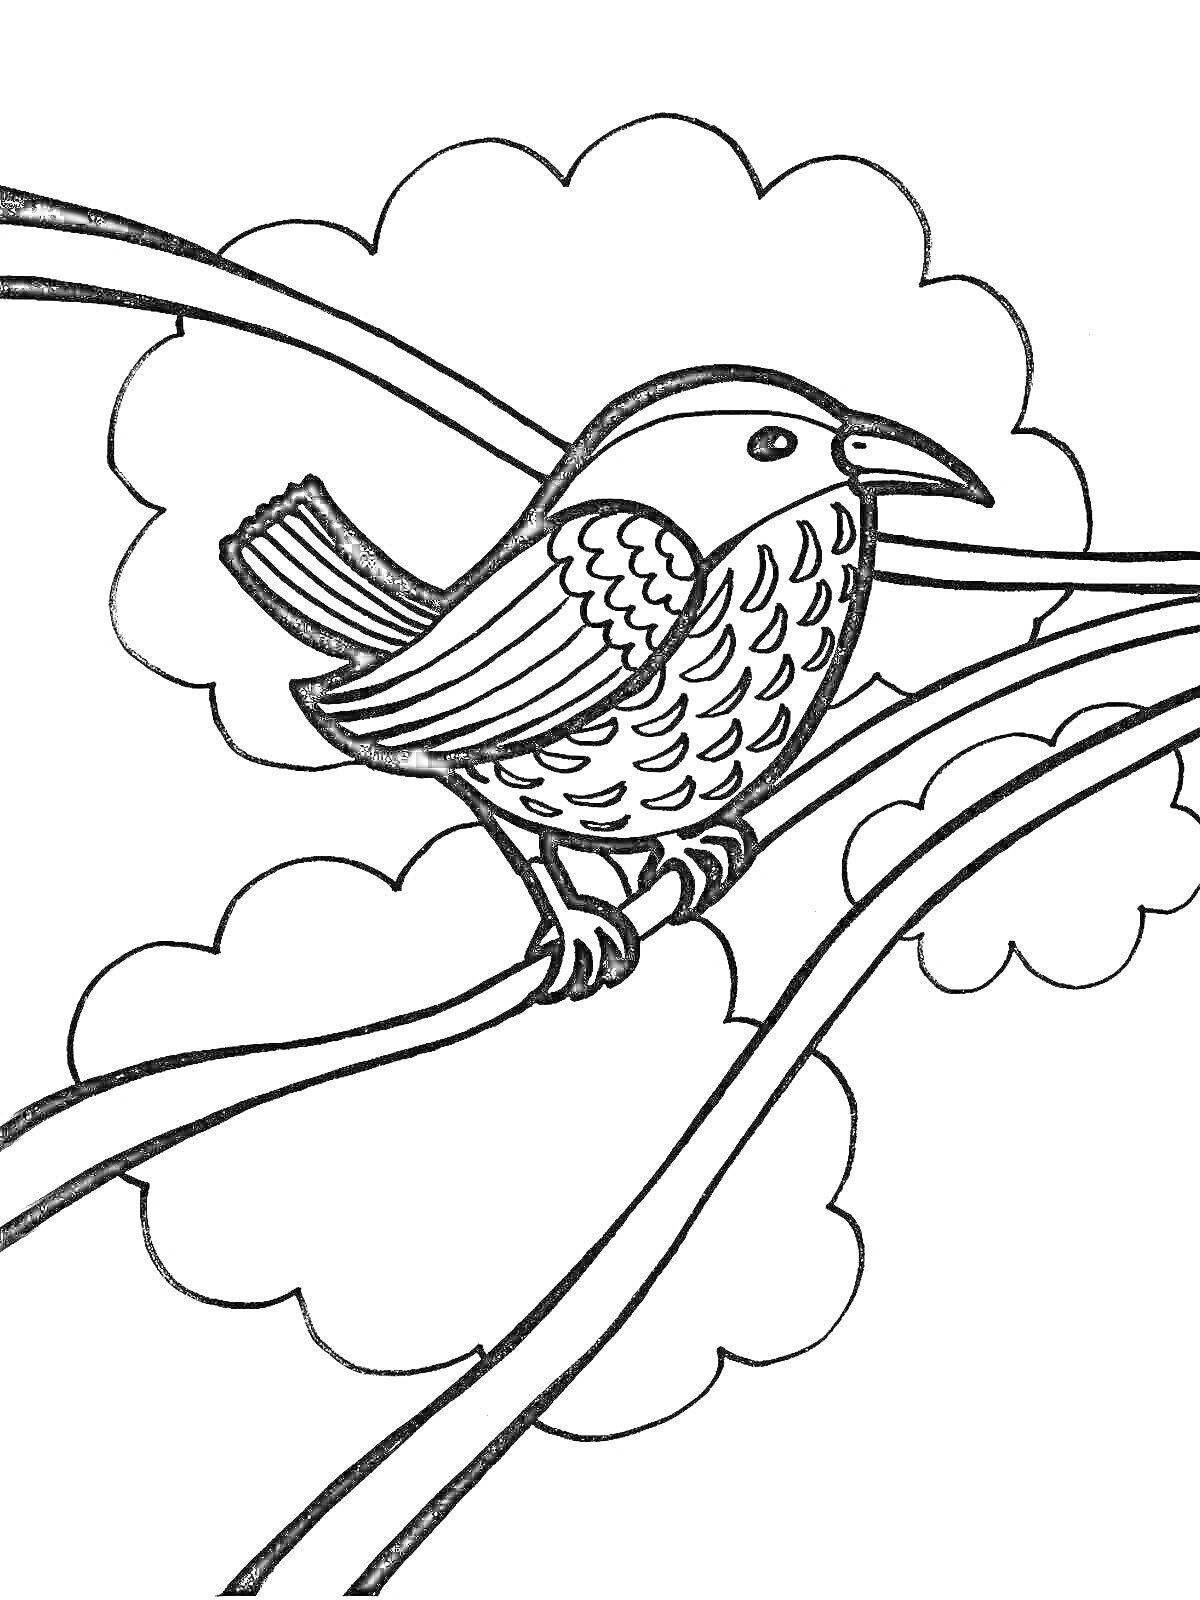 Раскраска Птичка на ветке дерева с облаками на заднем плане